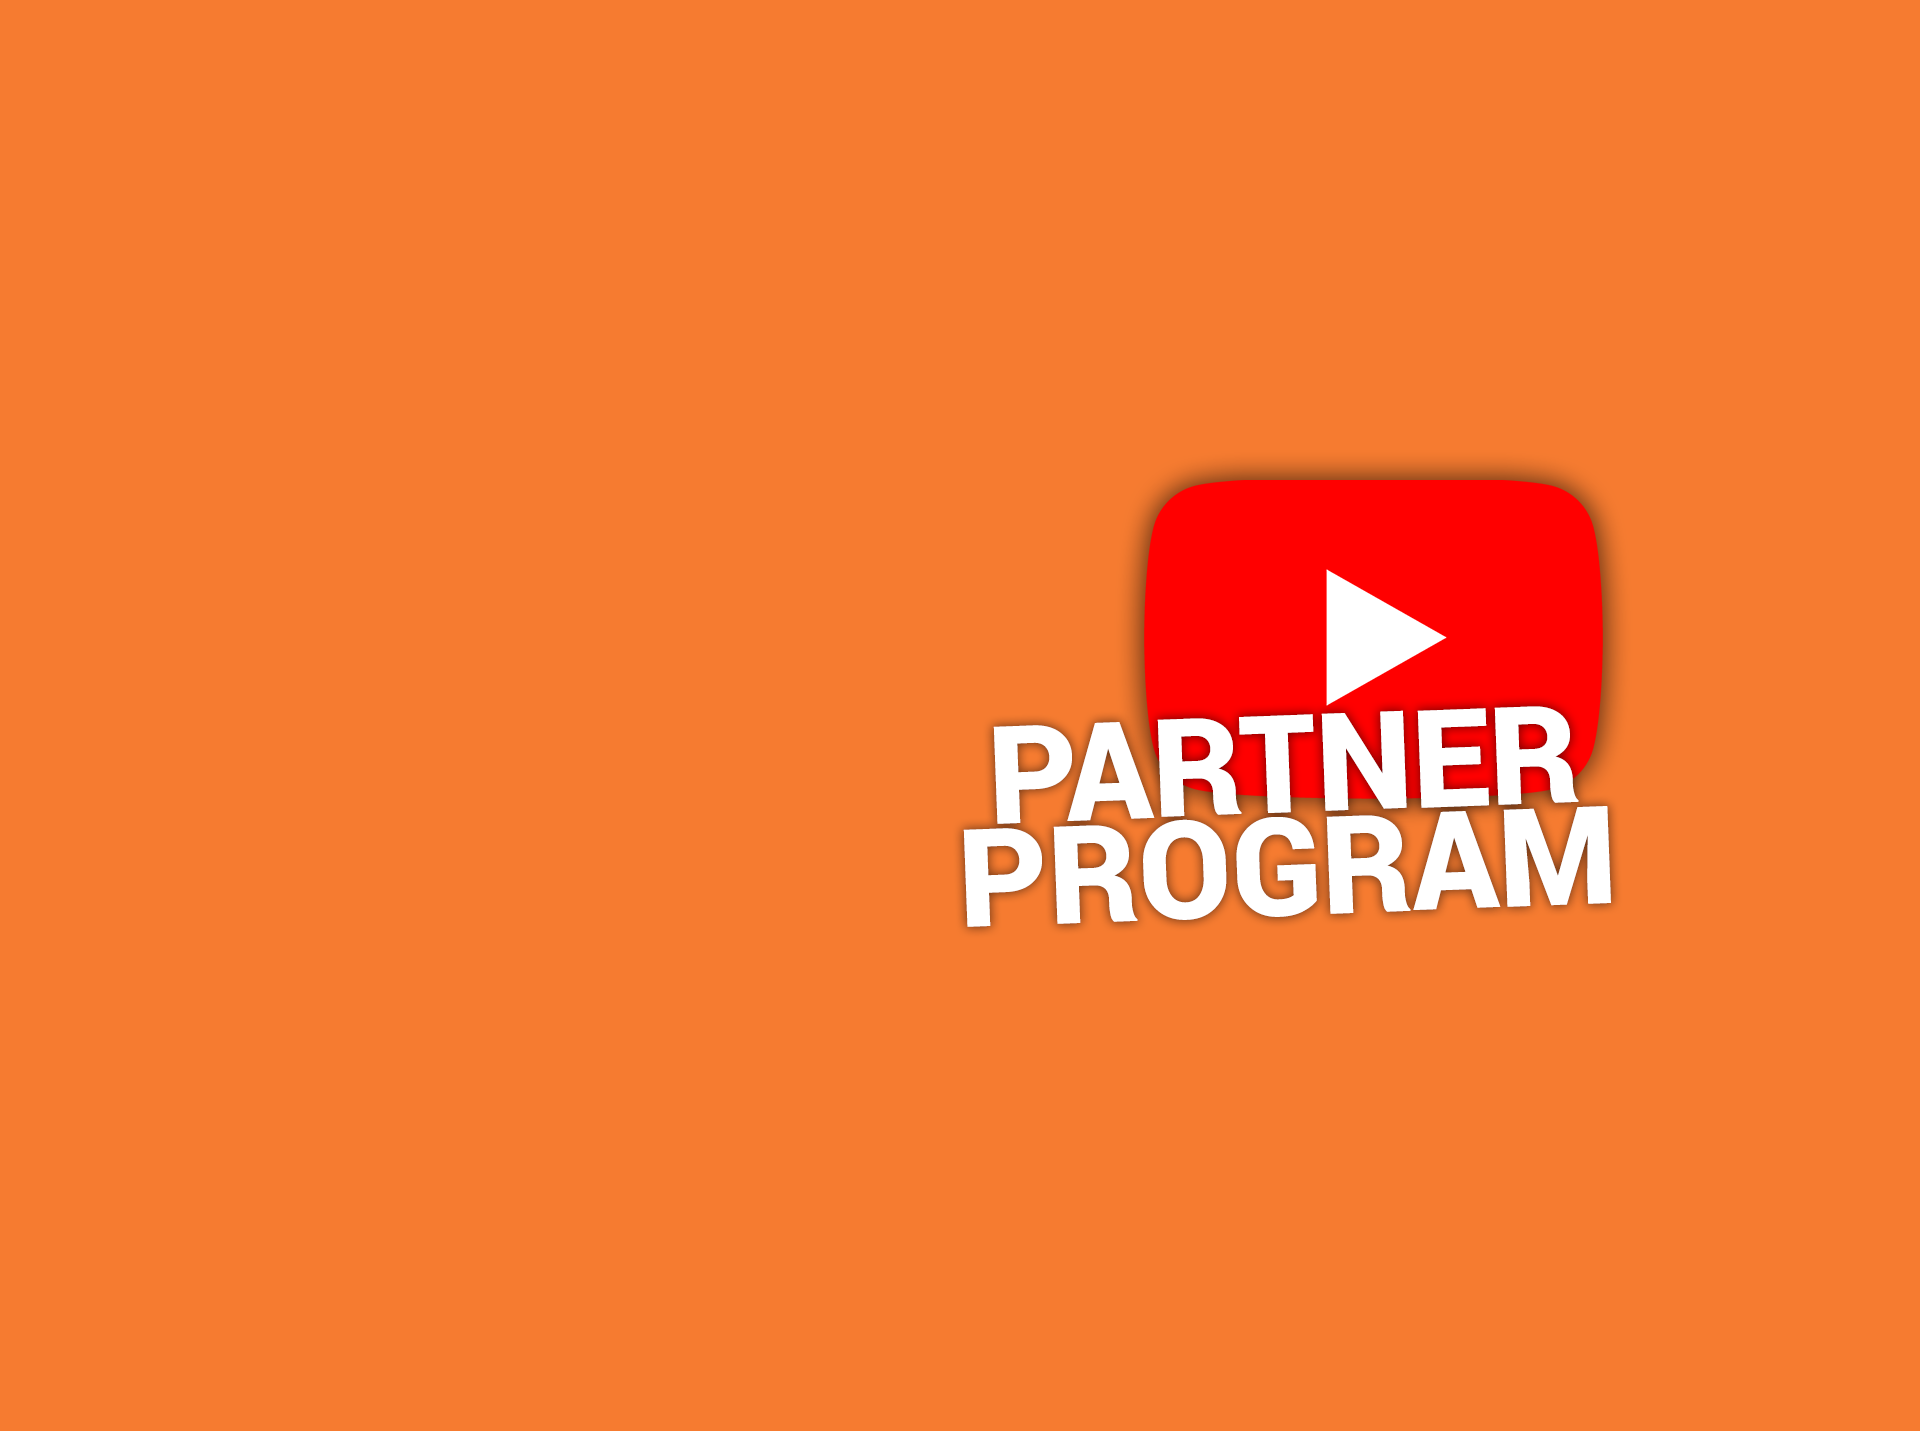 YouTube Partner Program BG